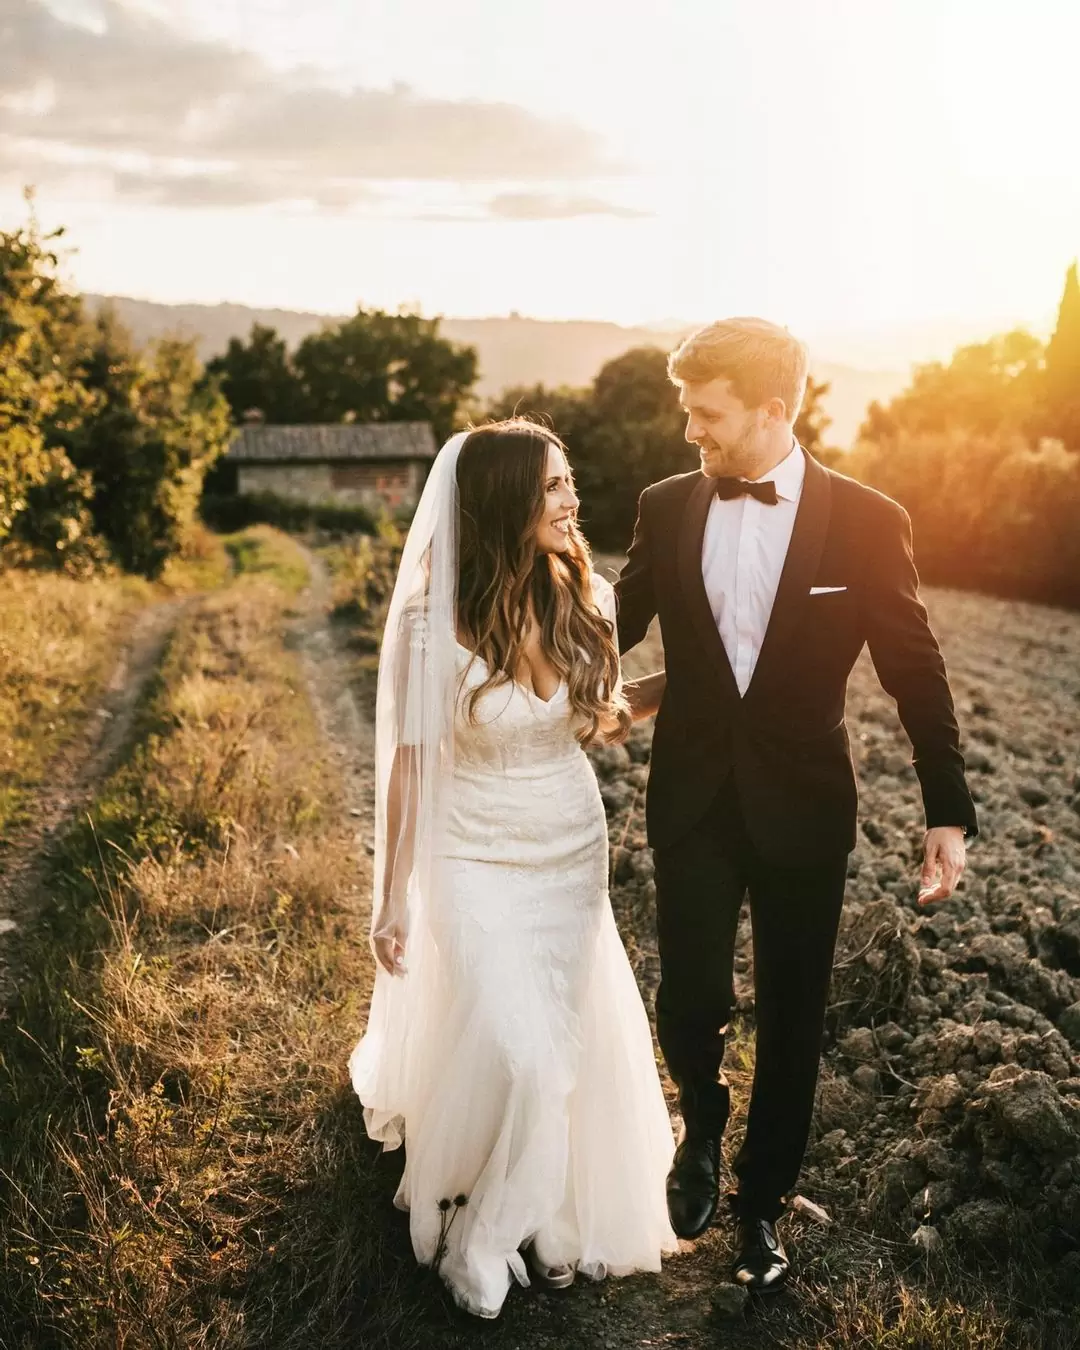 Жених и невеста на фото одеты в соответствии с дресс-кодом Black tie